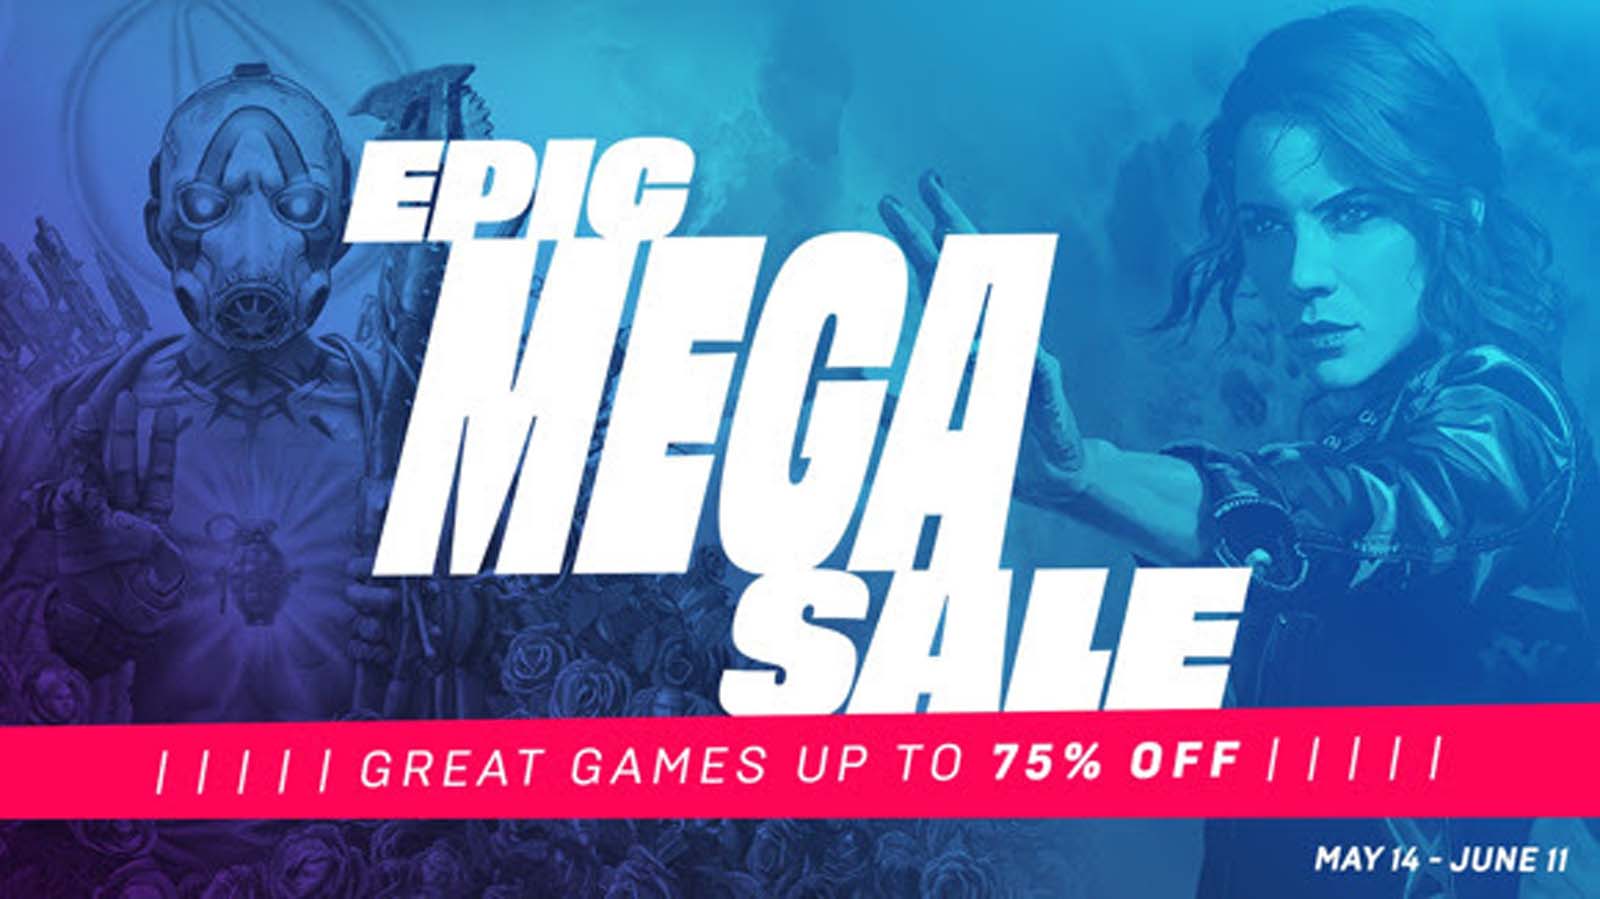 epic games deals